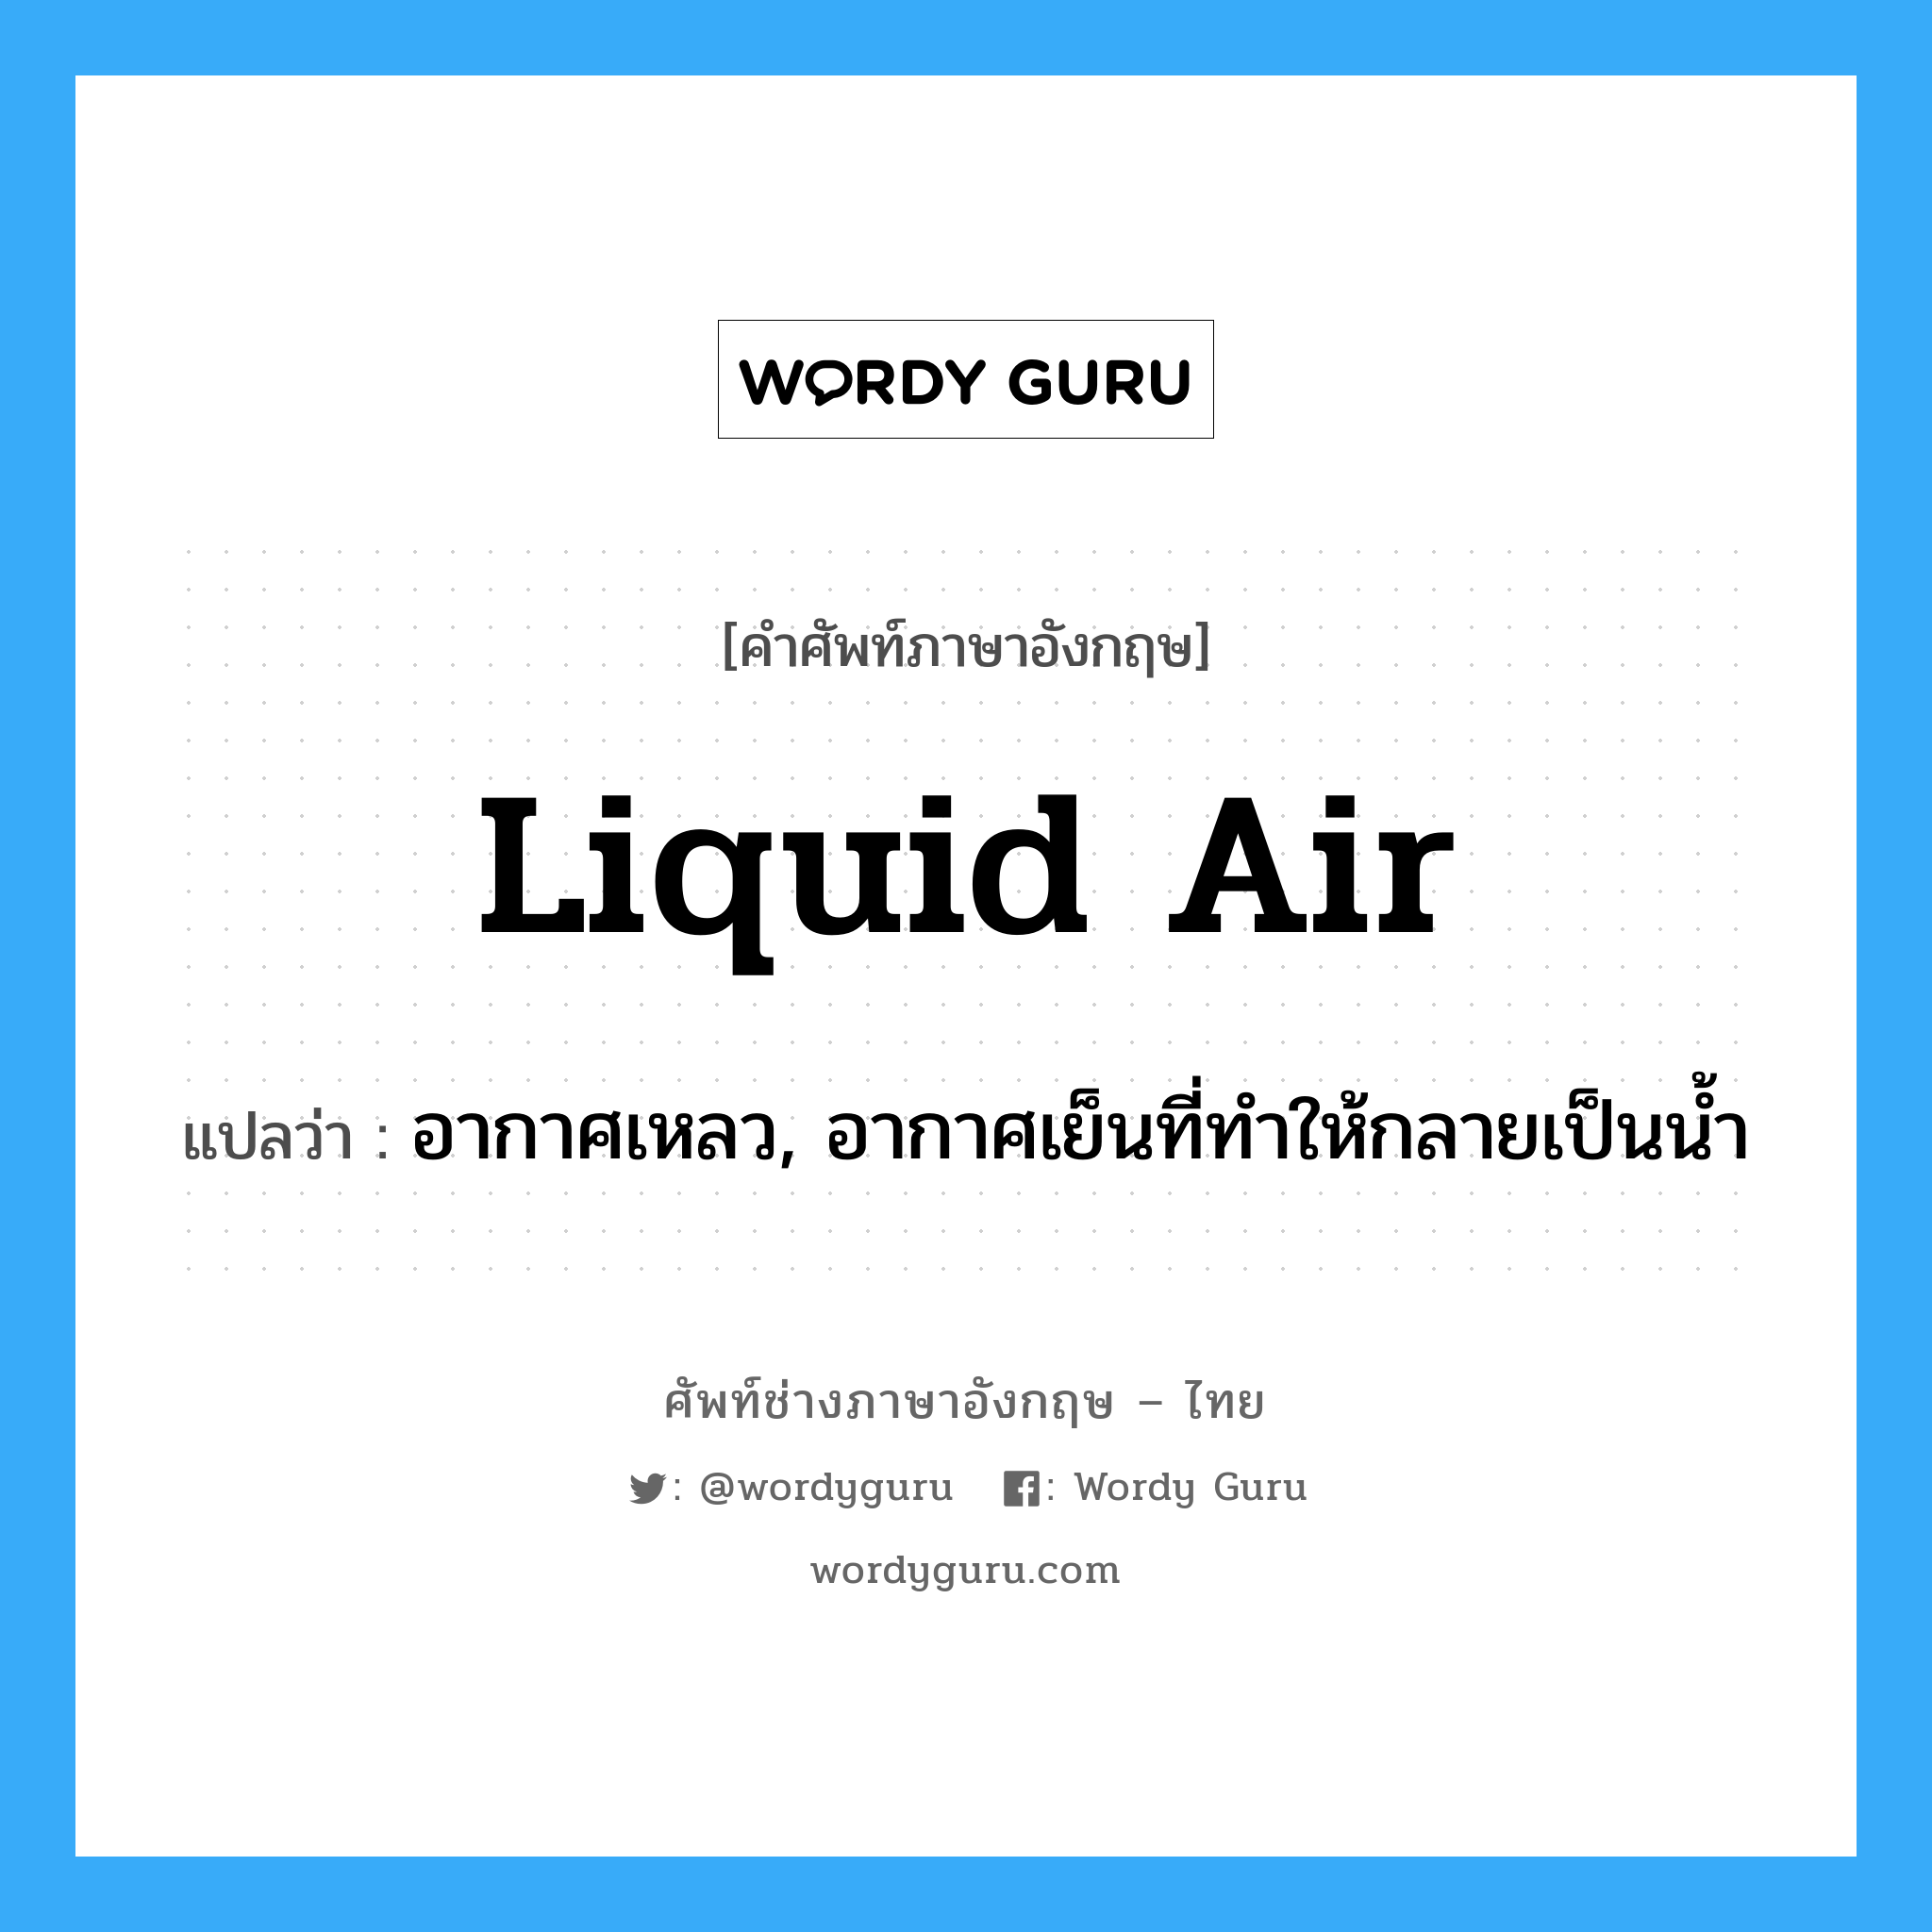 liquid air แปลว่า?, คำศัพท์ช่างภาษาอังกฤษ - ไทย liquid air คำศัพท์ภาษาอังกฤษ liquid air แปลว่า อากาศเหลว, อากาศเย็นที่ทำให้กลายเป็นน้ำ